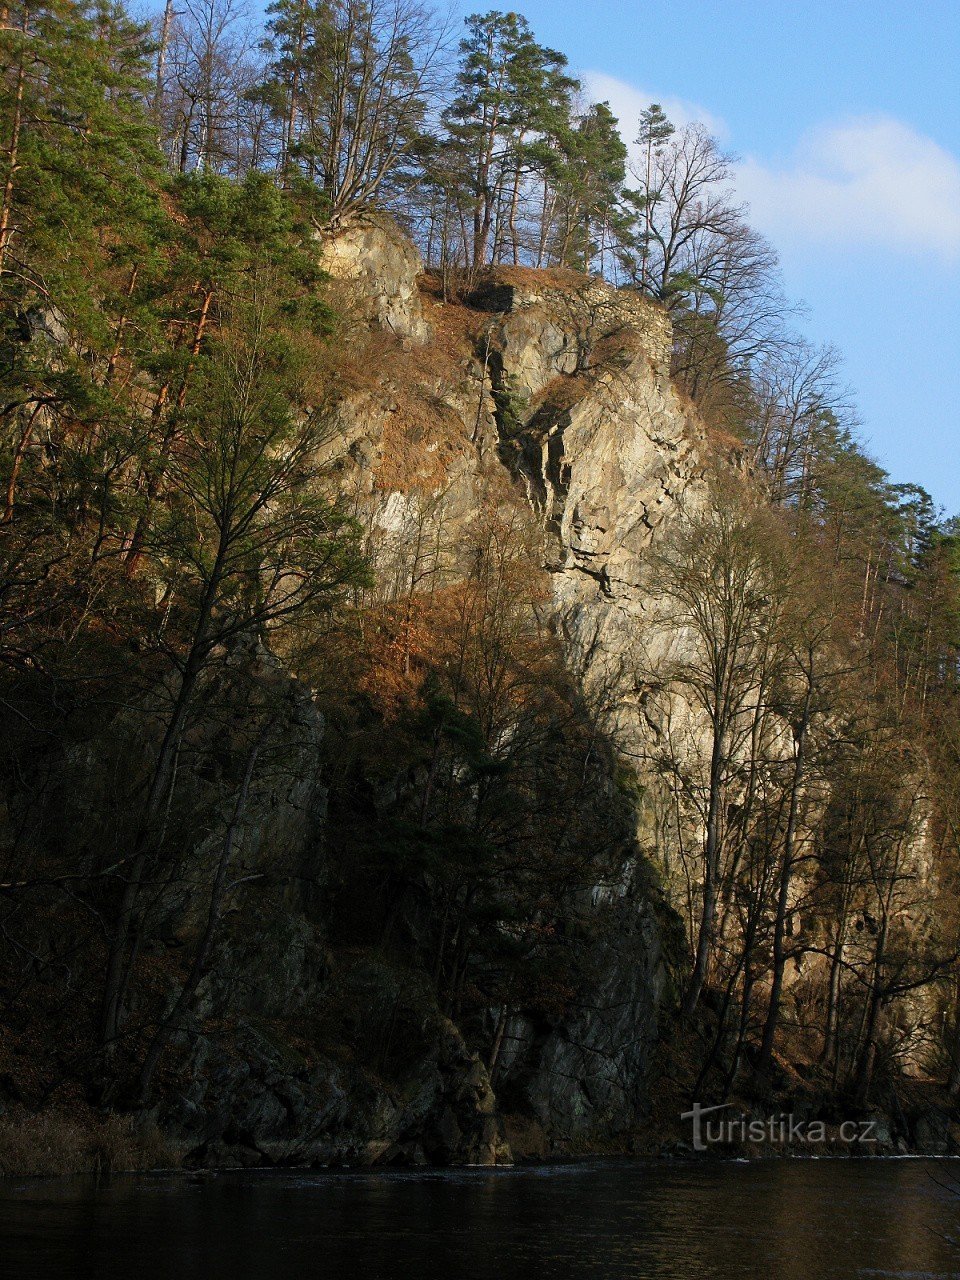 Kotek 城堡的废墟